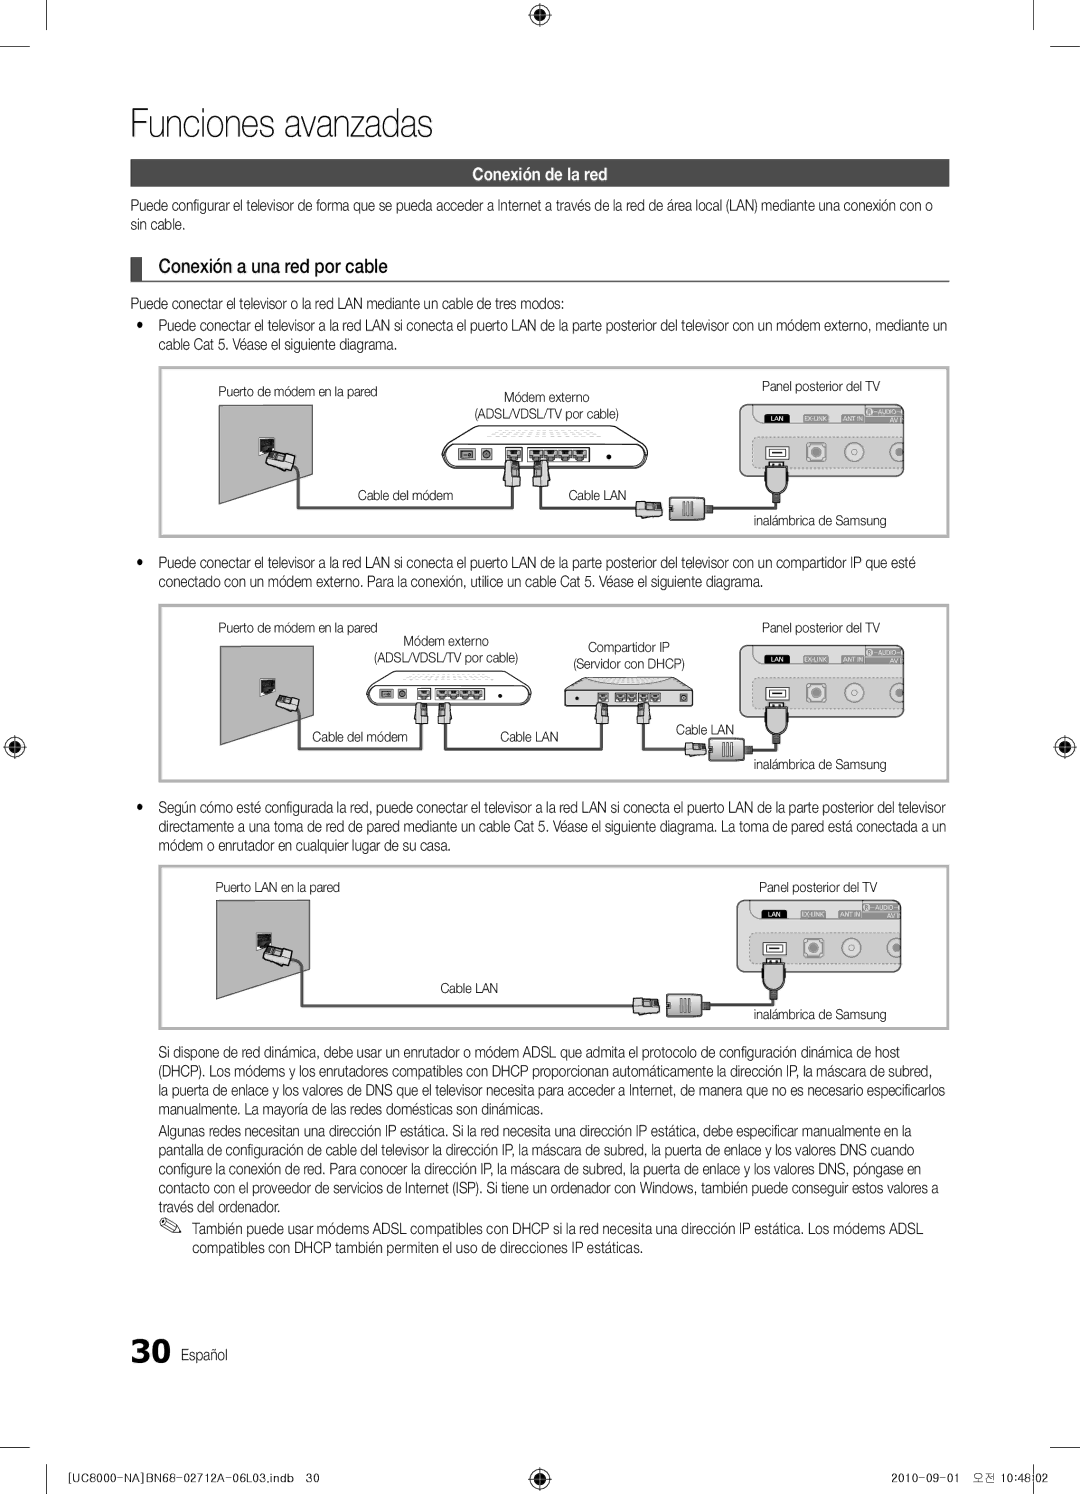 Samsung BN68-02712A-06 user manual Funciones avanzadas, Conexión a una red por cable, Conexión de la red 